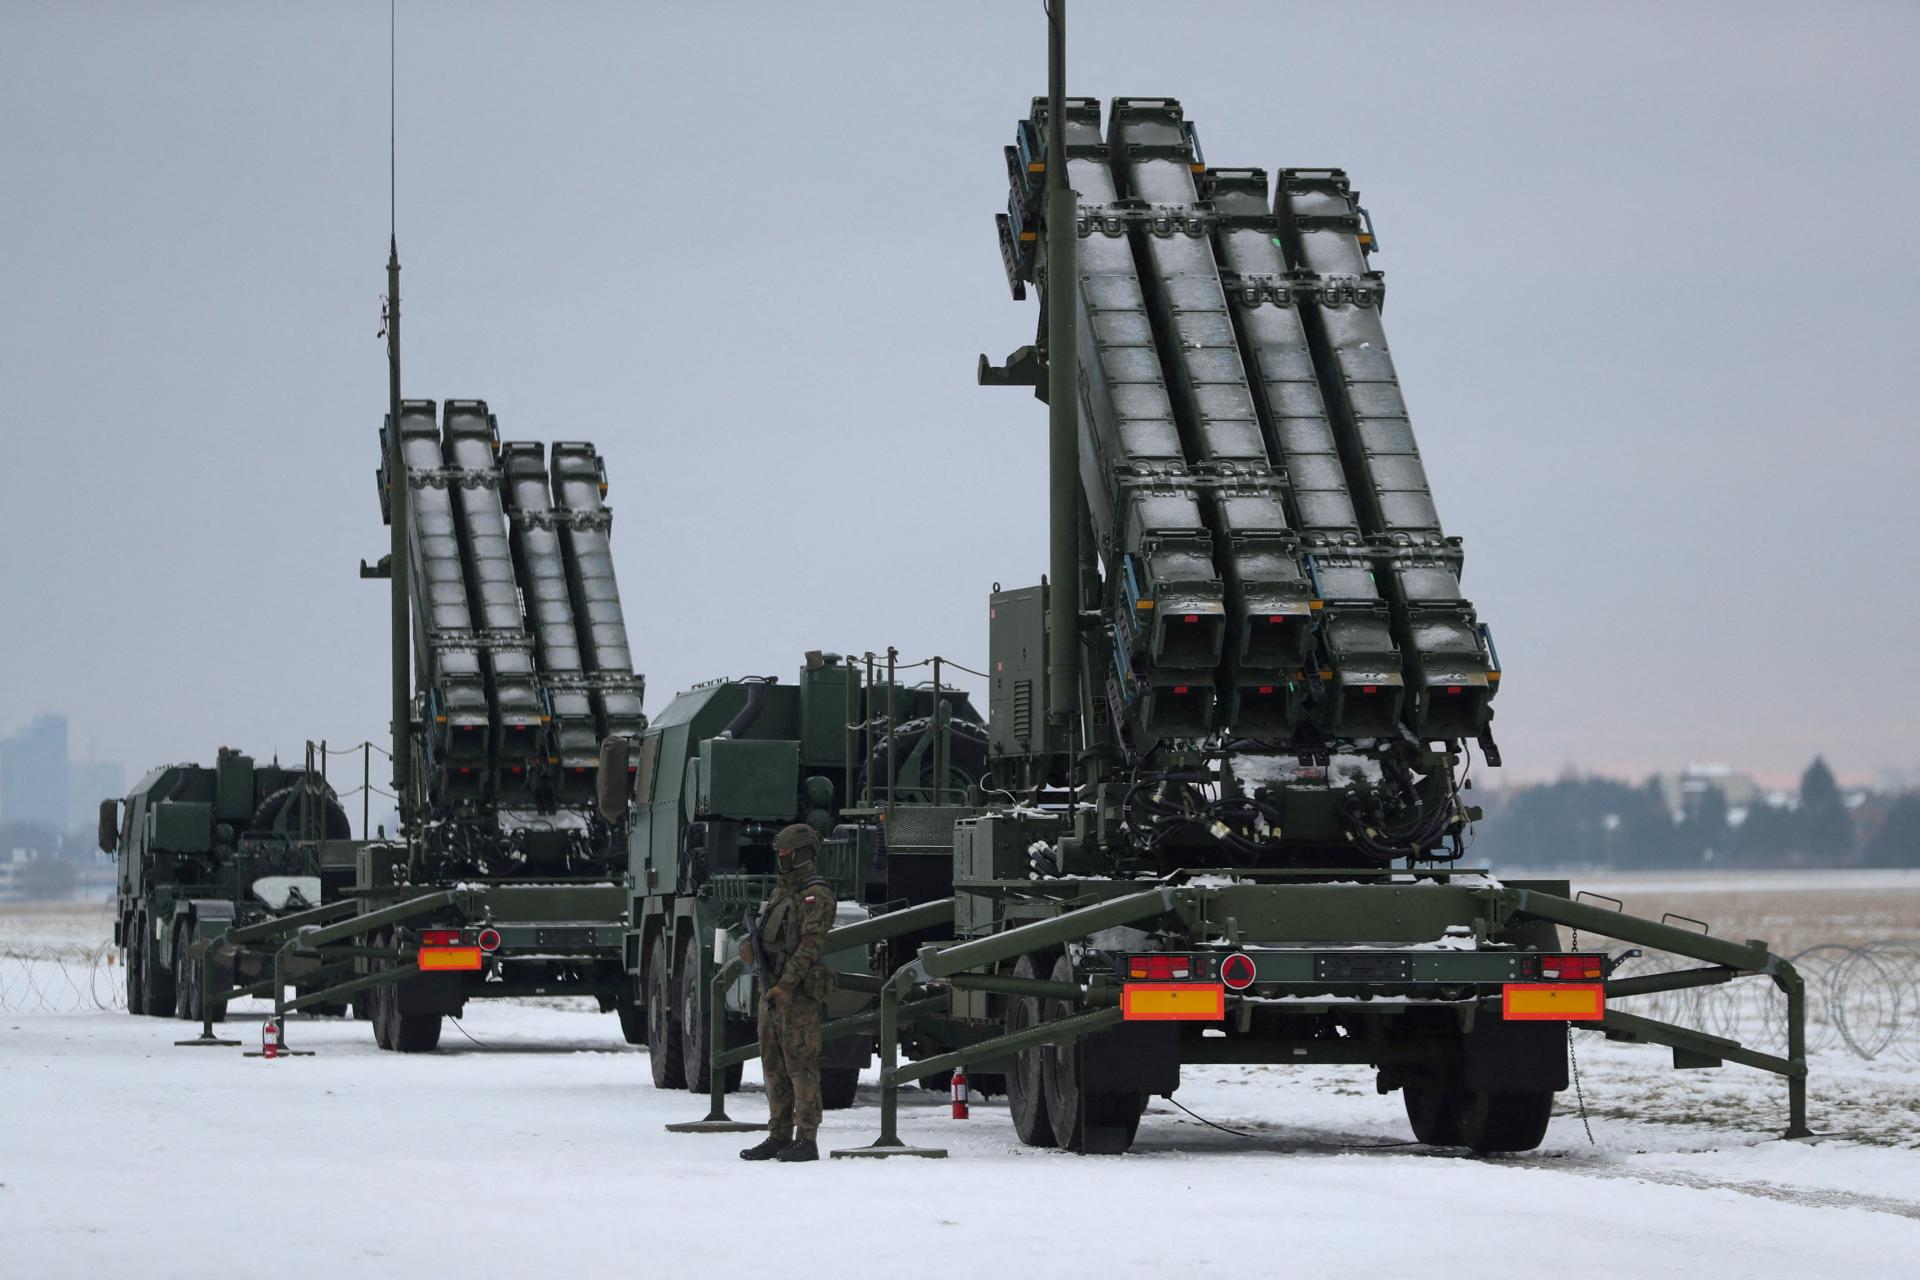 Nemecko takmer po roku z Poľska sťahuje svoje protiletecké systémy Patriot